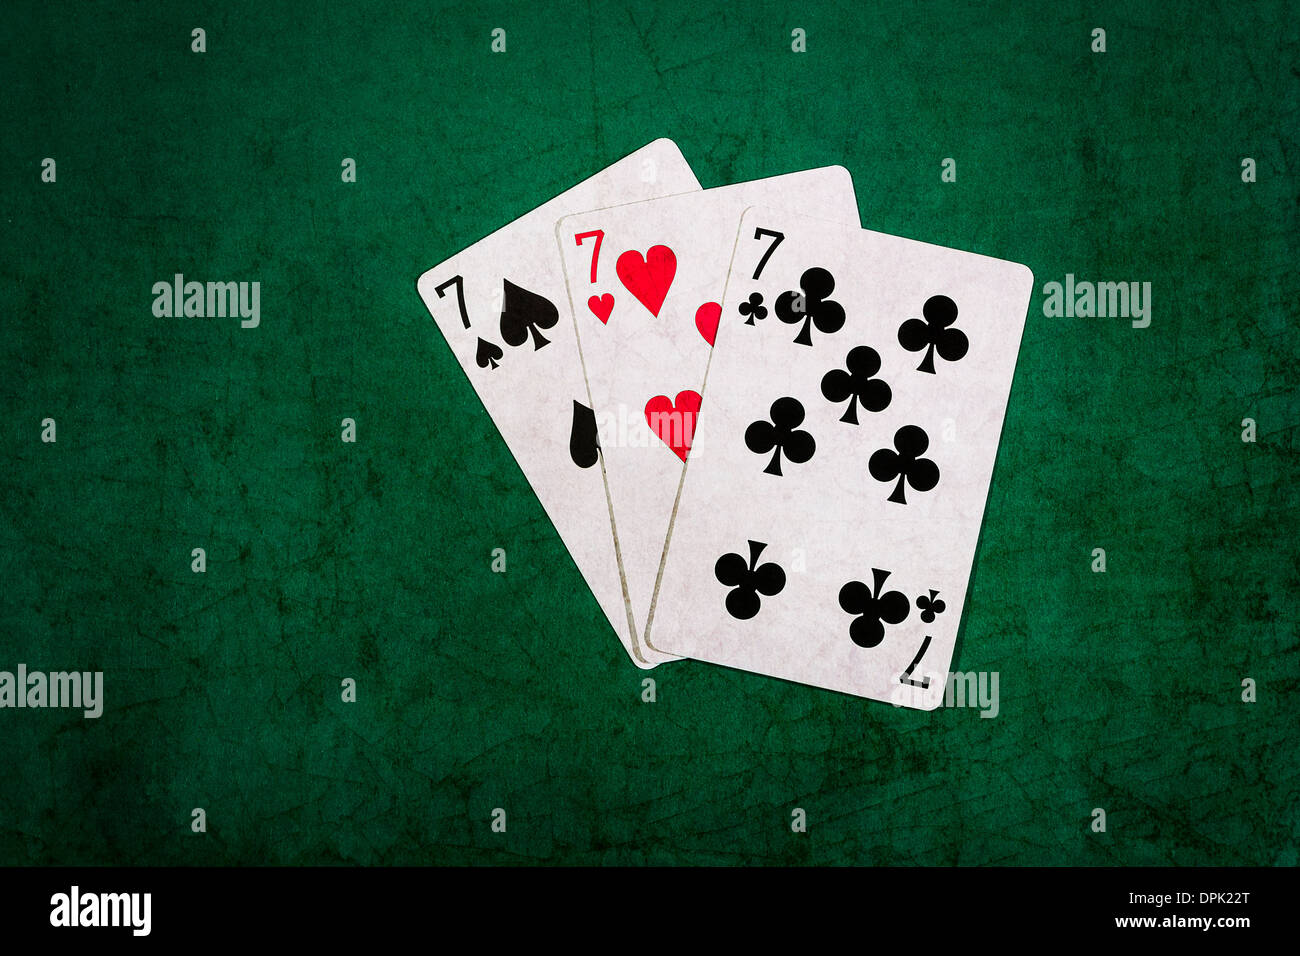 Vingt et un 12. Vue rapprochée des cartes formant la combinaison de blackjack vingt un points Banque D'Images